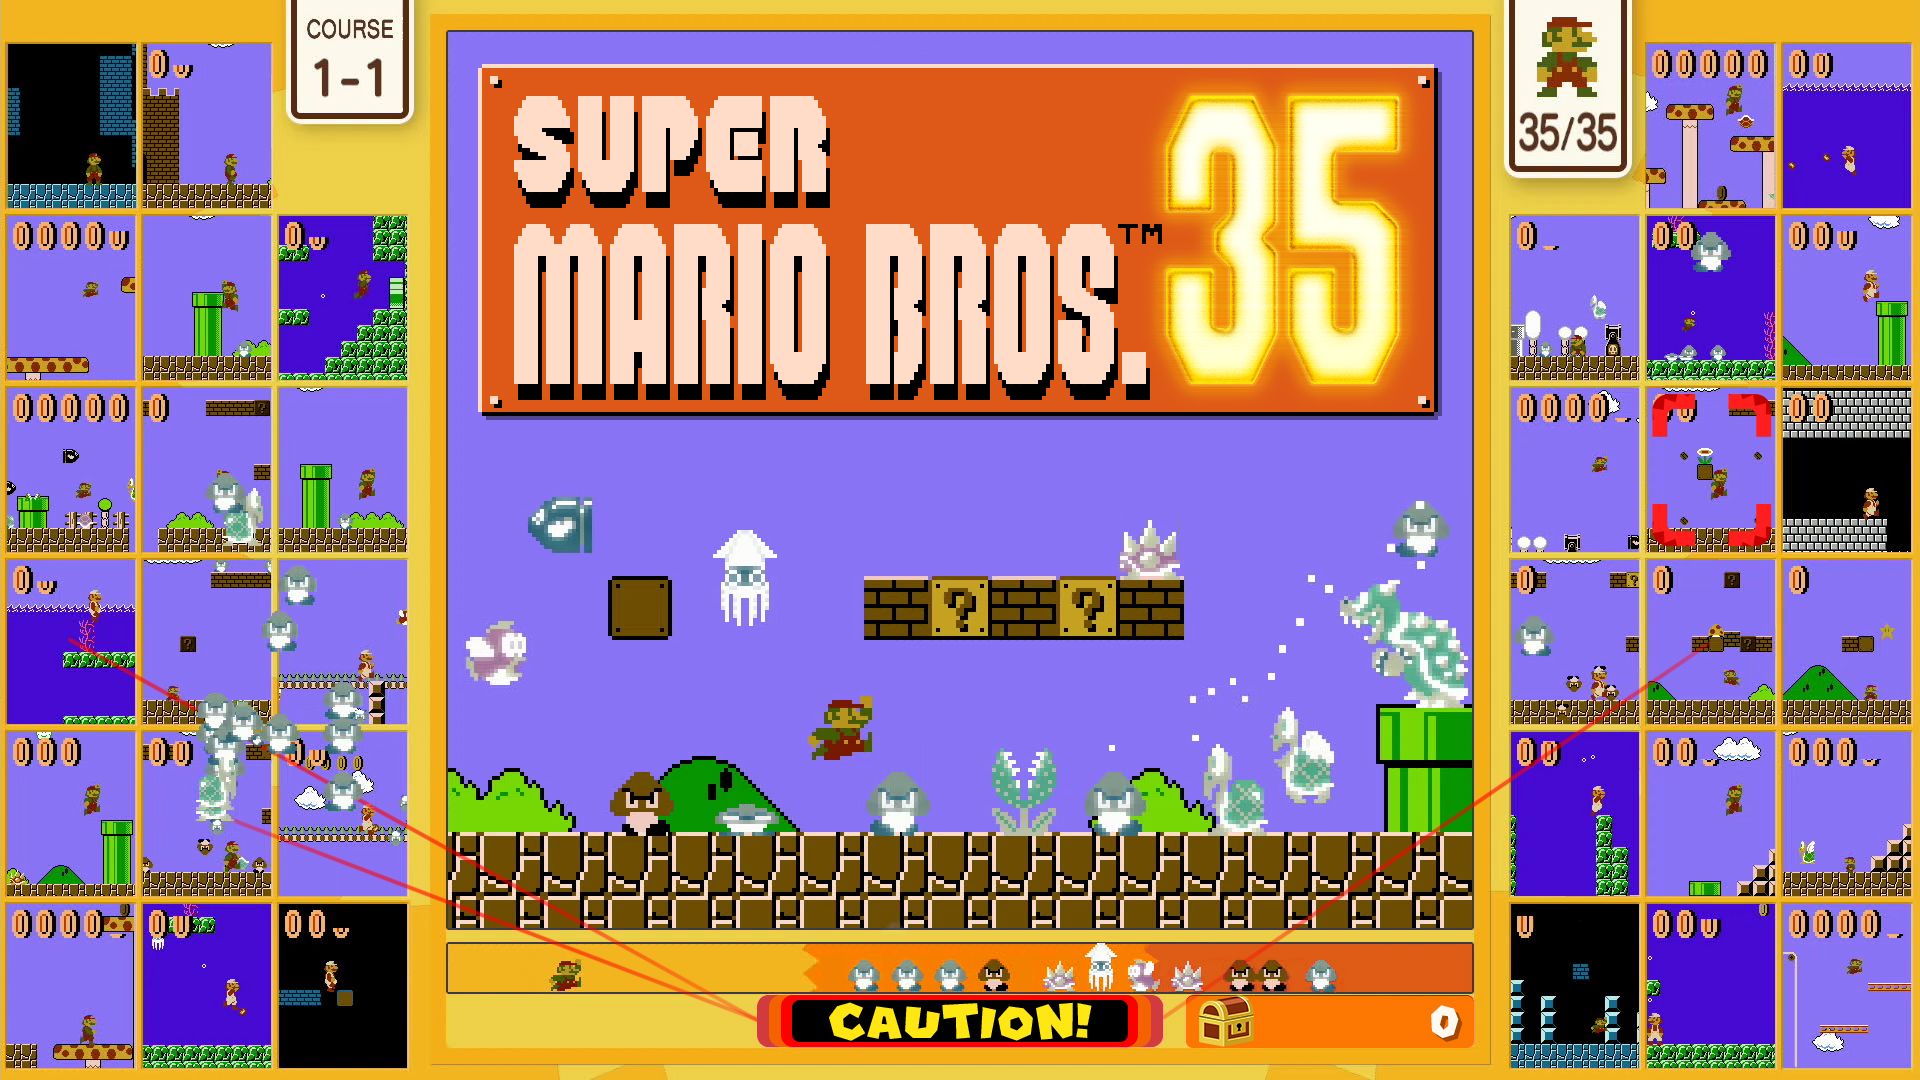 Super Mario Bros. 35 annoncé sur Nintendo Switch Online, disponible le 1er octobre